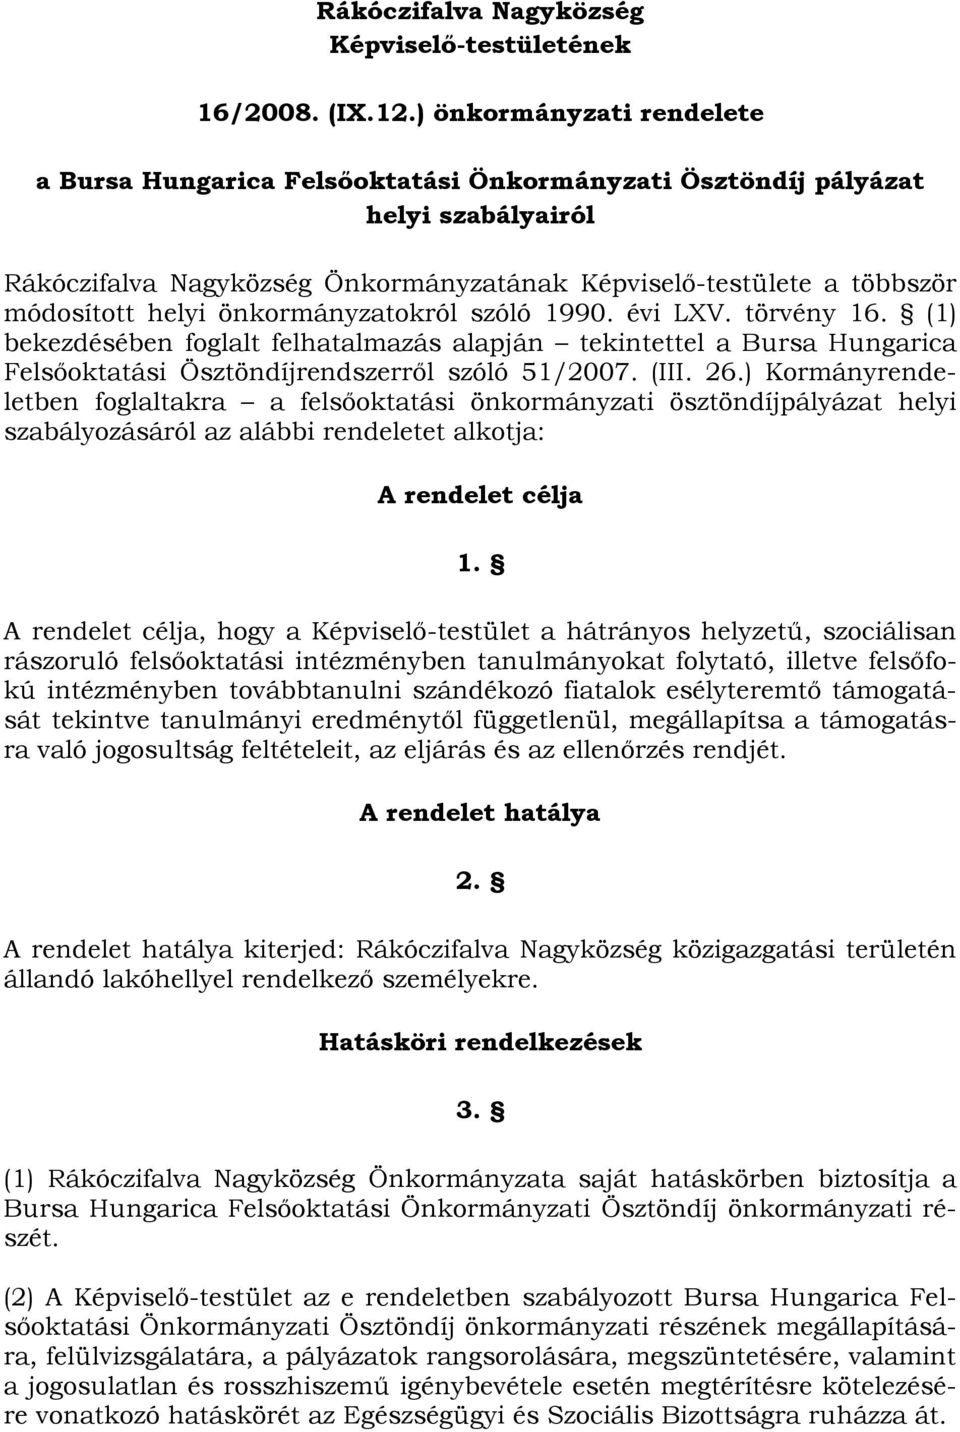 önkormányzatokról szóló 1990. évi LXV. törvény 16. (1) bekezdésében foglalt felhatalmazás alapján tekintettel a Bursa Hungarica Felsőoktatási Ösztöndíjrendszerről szóló 51/2007. (III. 26.